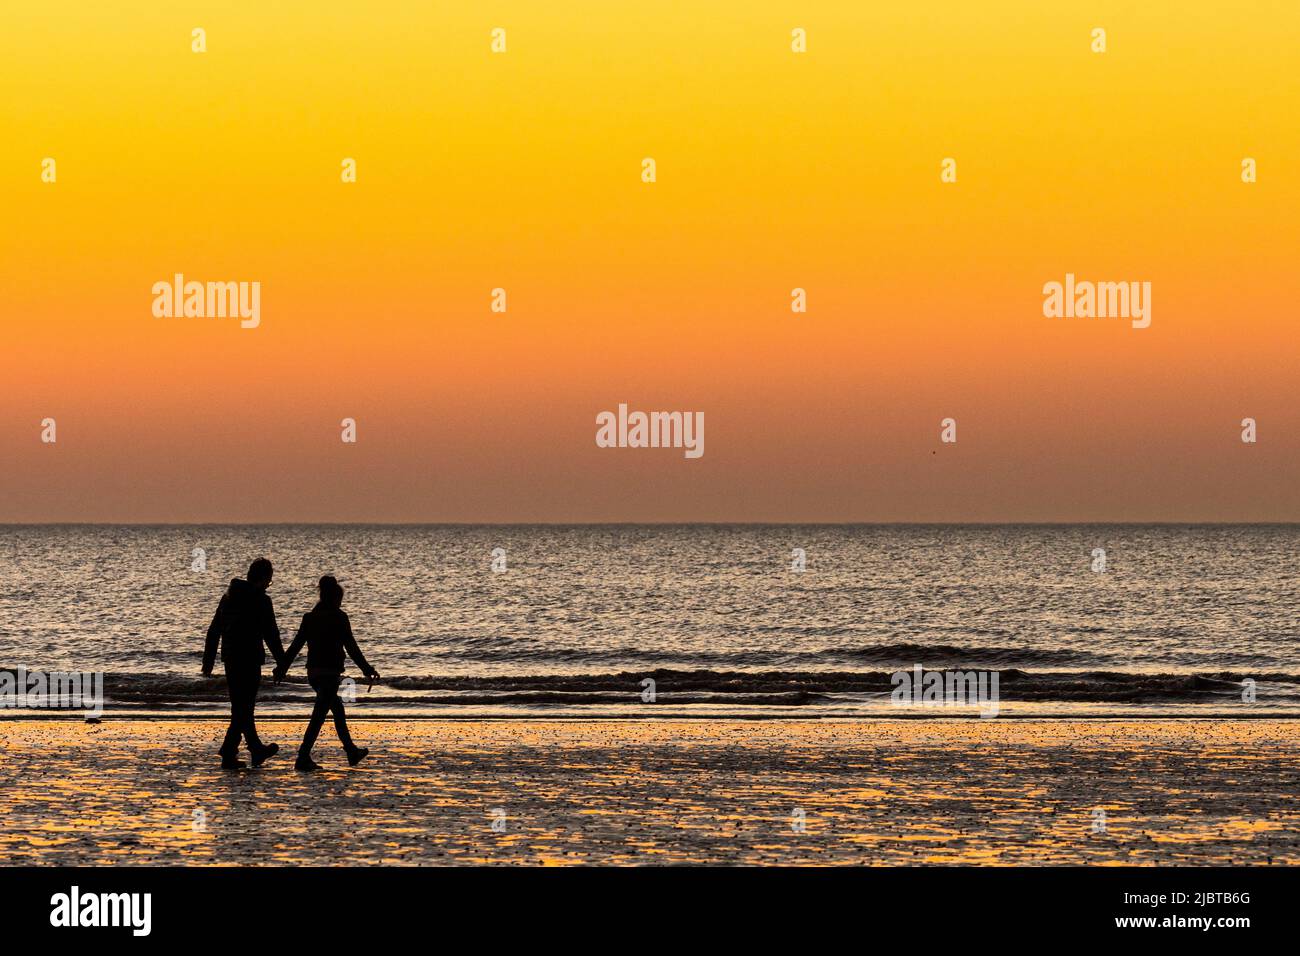 France, somme, Ault, couple sur la plage au coucher du soleil Banque D'Images